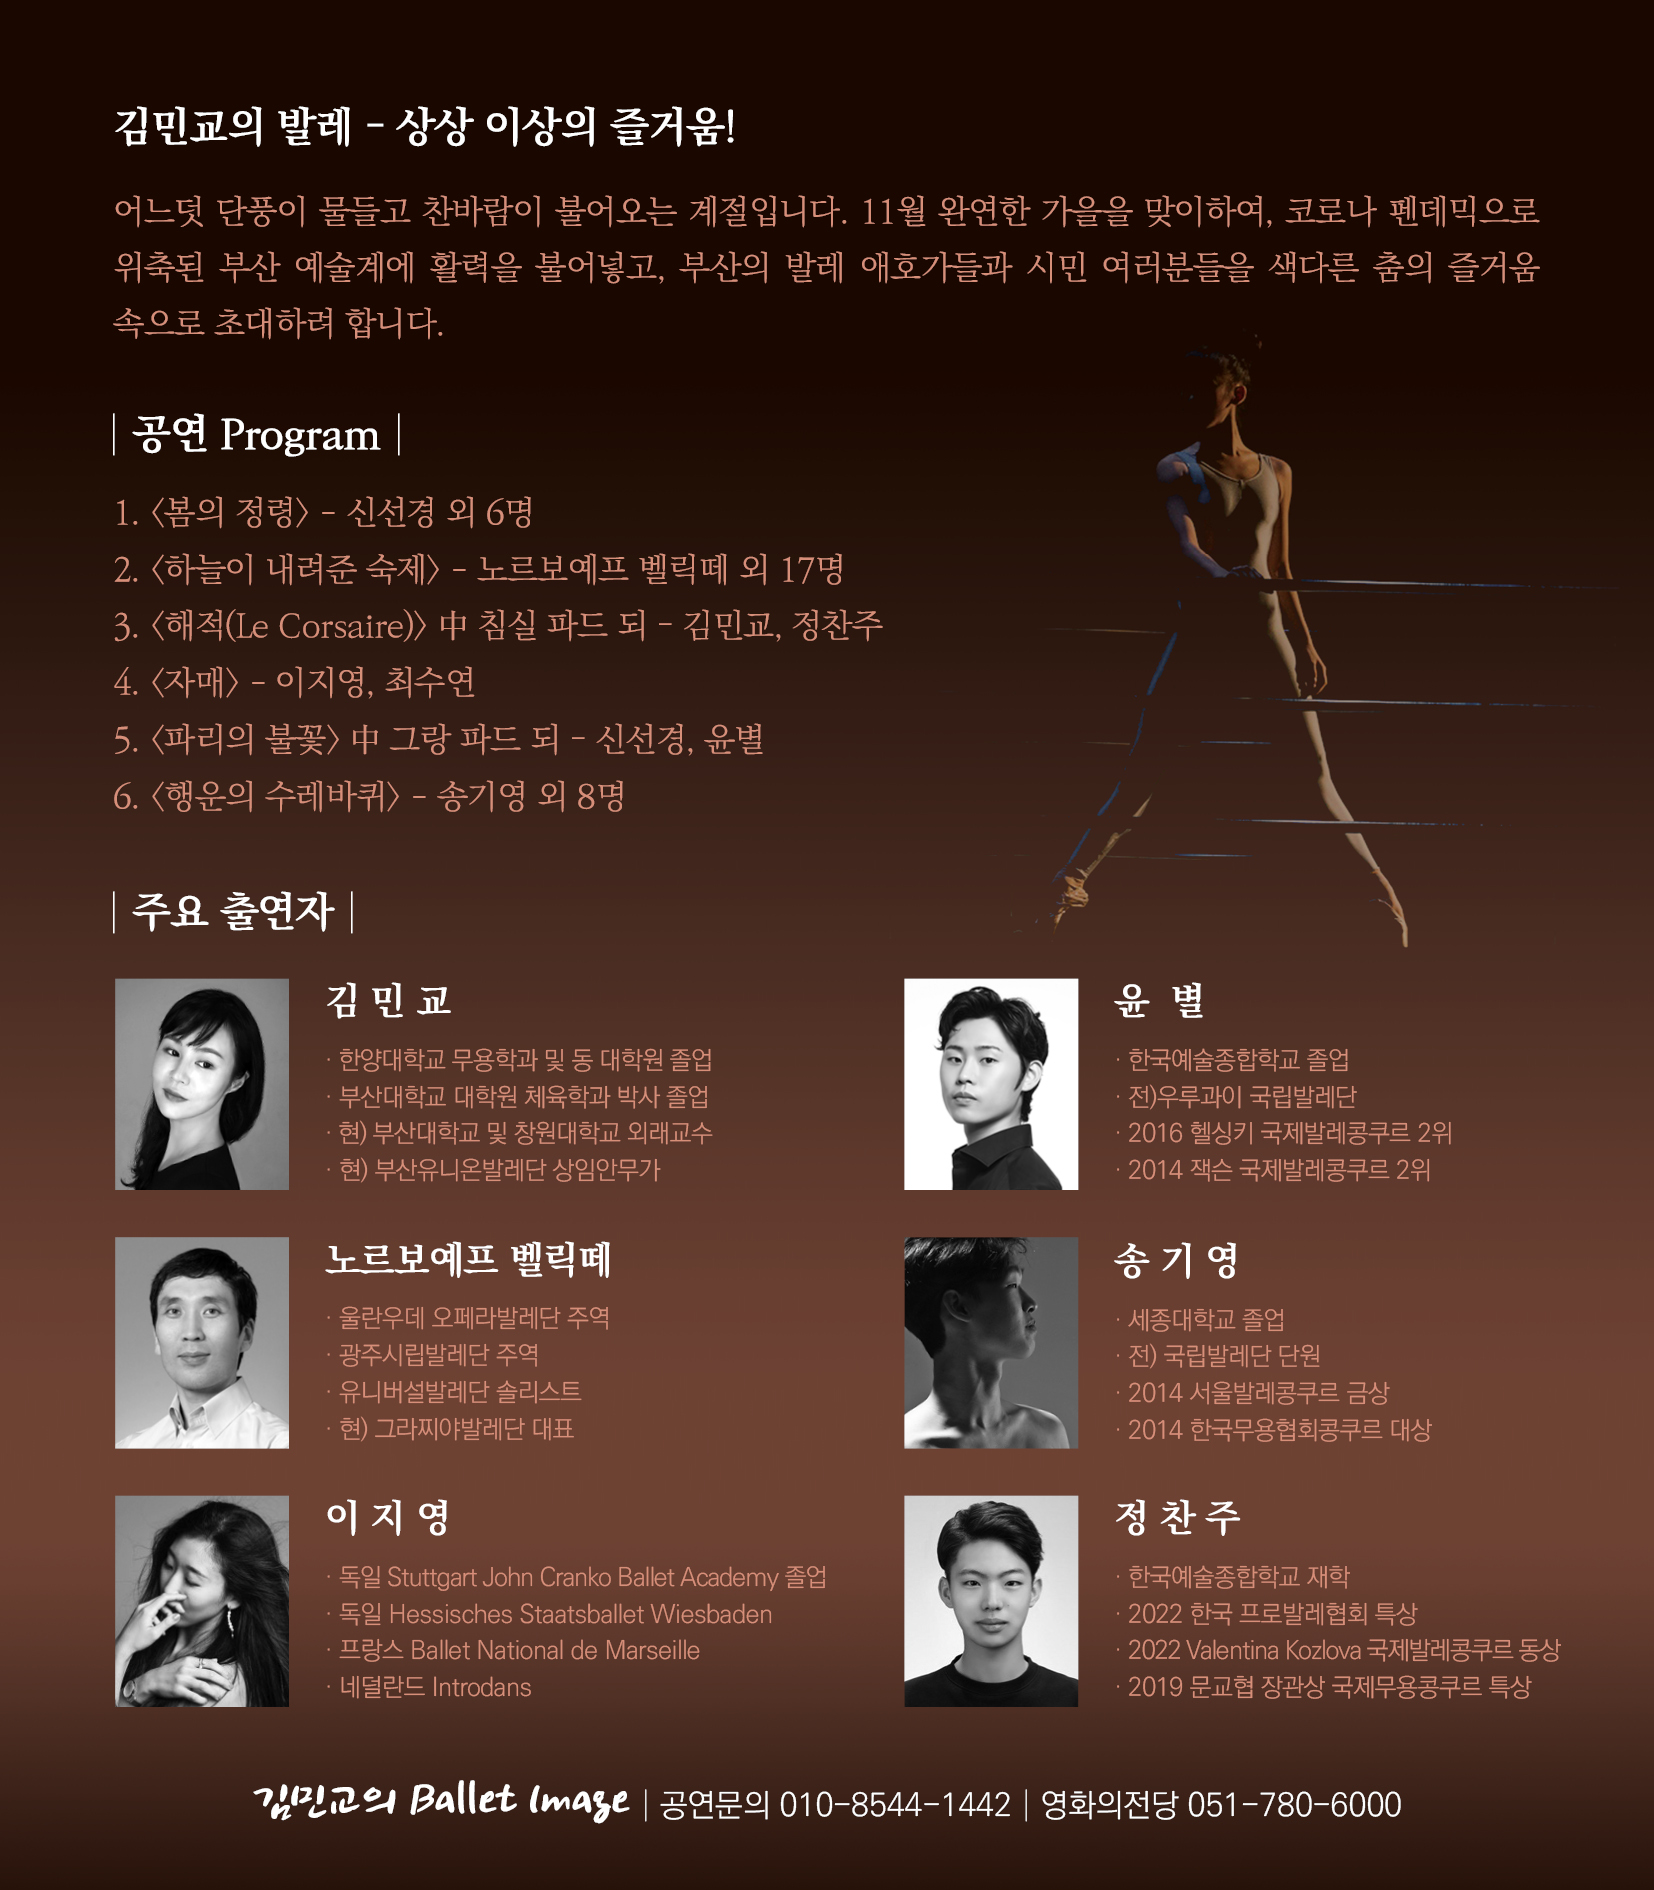 김민교의 Ballet Image 스틸 컷